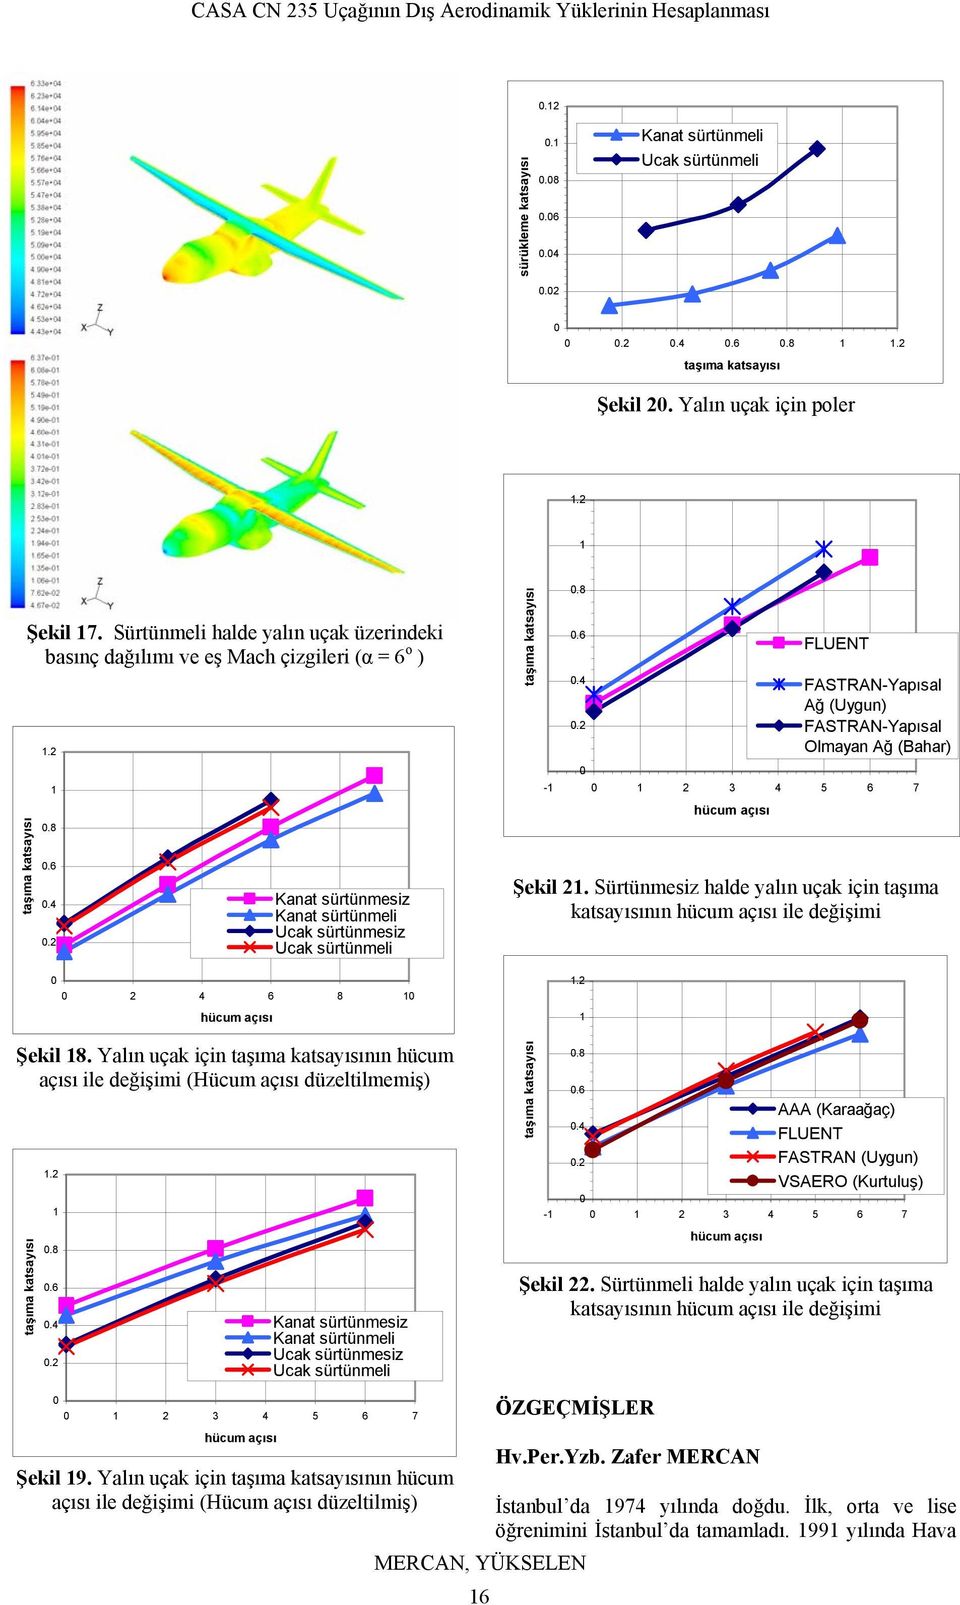 Yalın uçak için nın hücum açısı ile değişimi (Hücum açısı düzeltilmemiş).8.6.4.2 AAA (Karaağaç) FLUENT FASTRAN (Uygun) VSAERO (Kurtuluş) - 2 3 4 5 6 7.8.6.4.2 Kanat sürtünmesiz Ucak sürtünmesiz Ucak sürtünmeli Şekil 22.